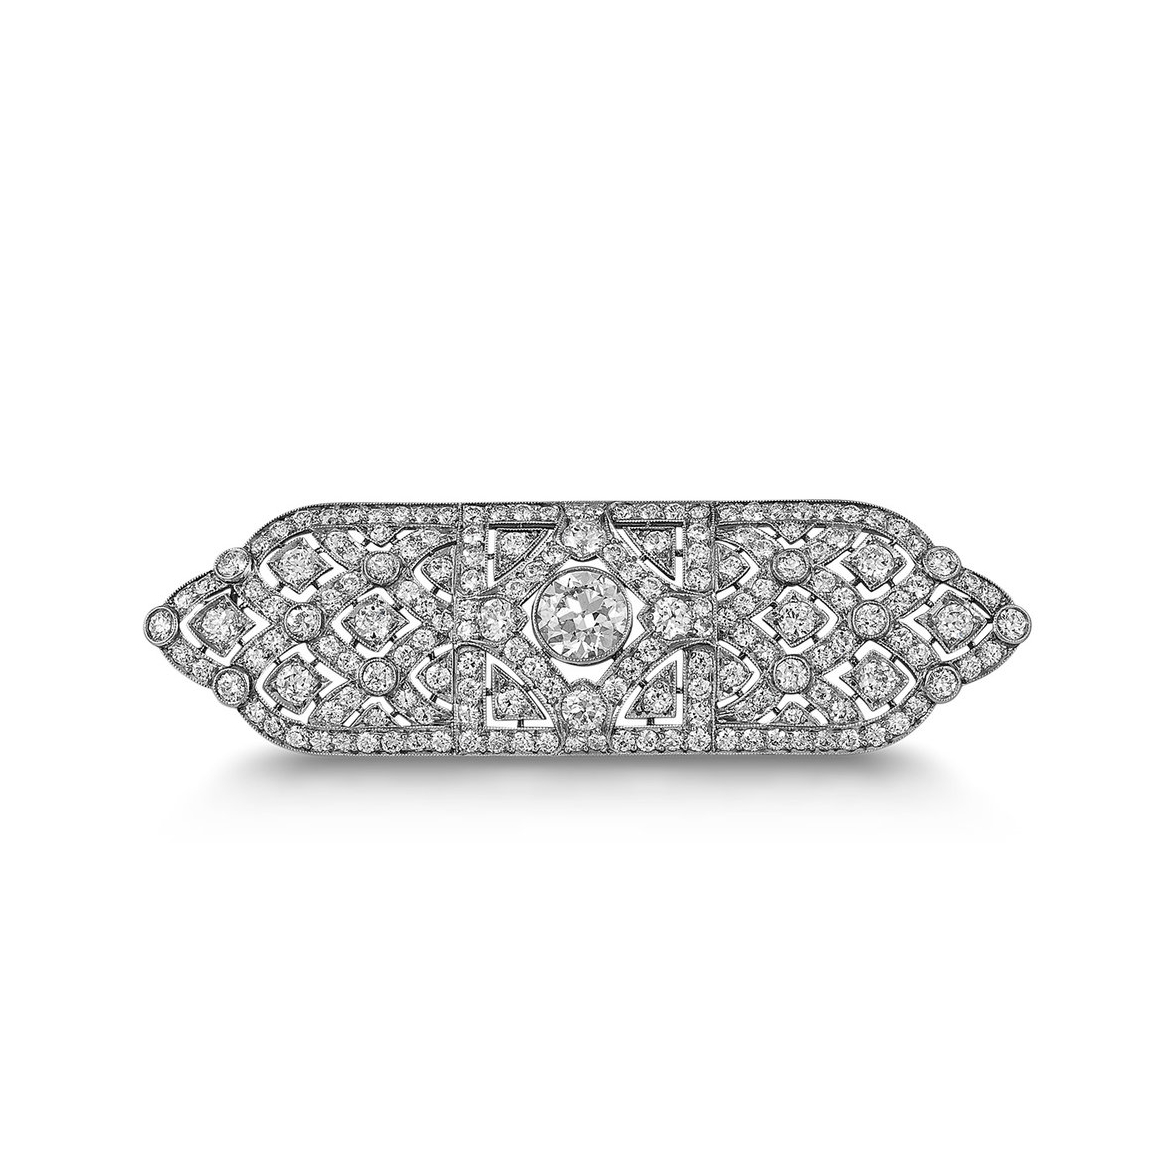 tiffany diamond brooch